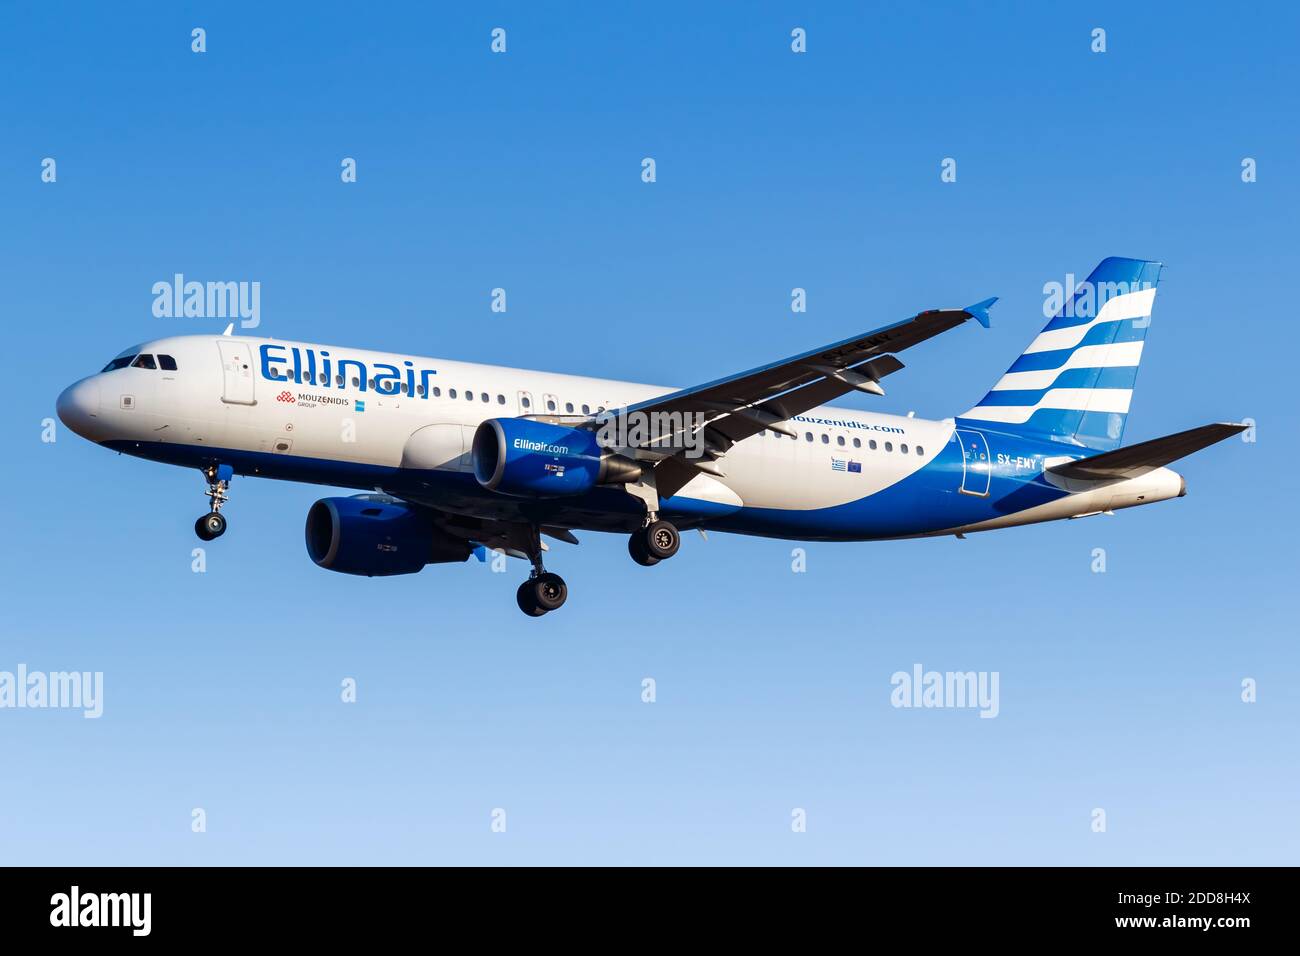 Athen, Griechenland - 21. September 2020: Ellinair Airbus A320 am Flughafen  Athen in Griechenland. Airbus ist ein europäischer Flugzeughersteller mit  Sitz in To Stockfotografie - Alamy